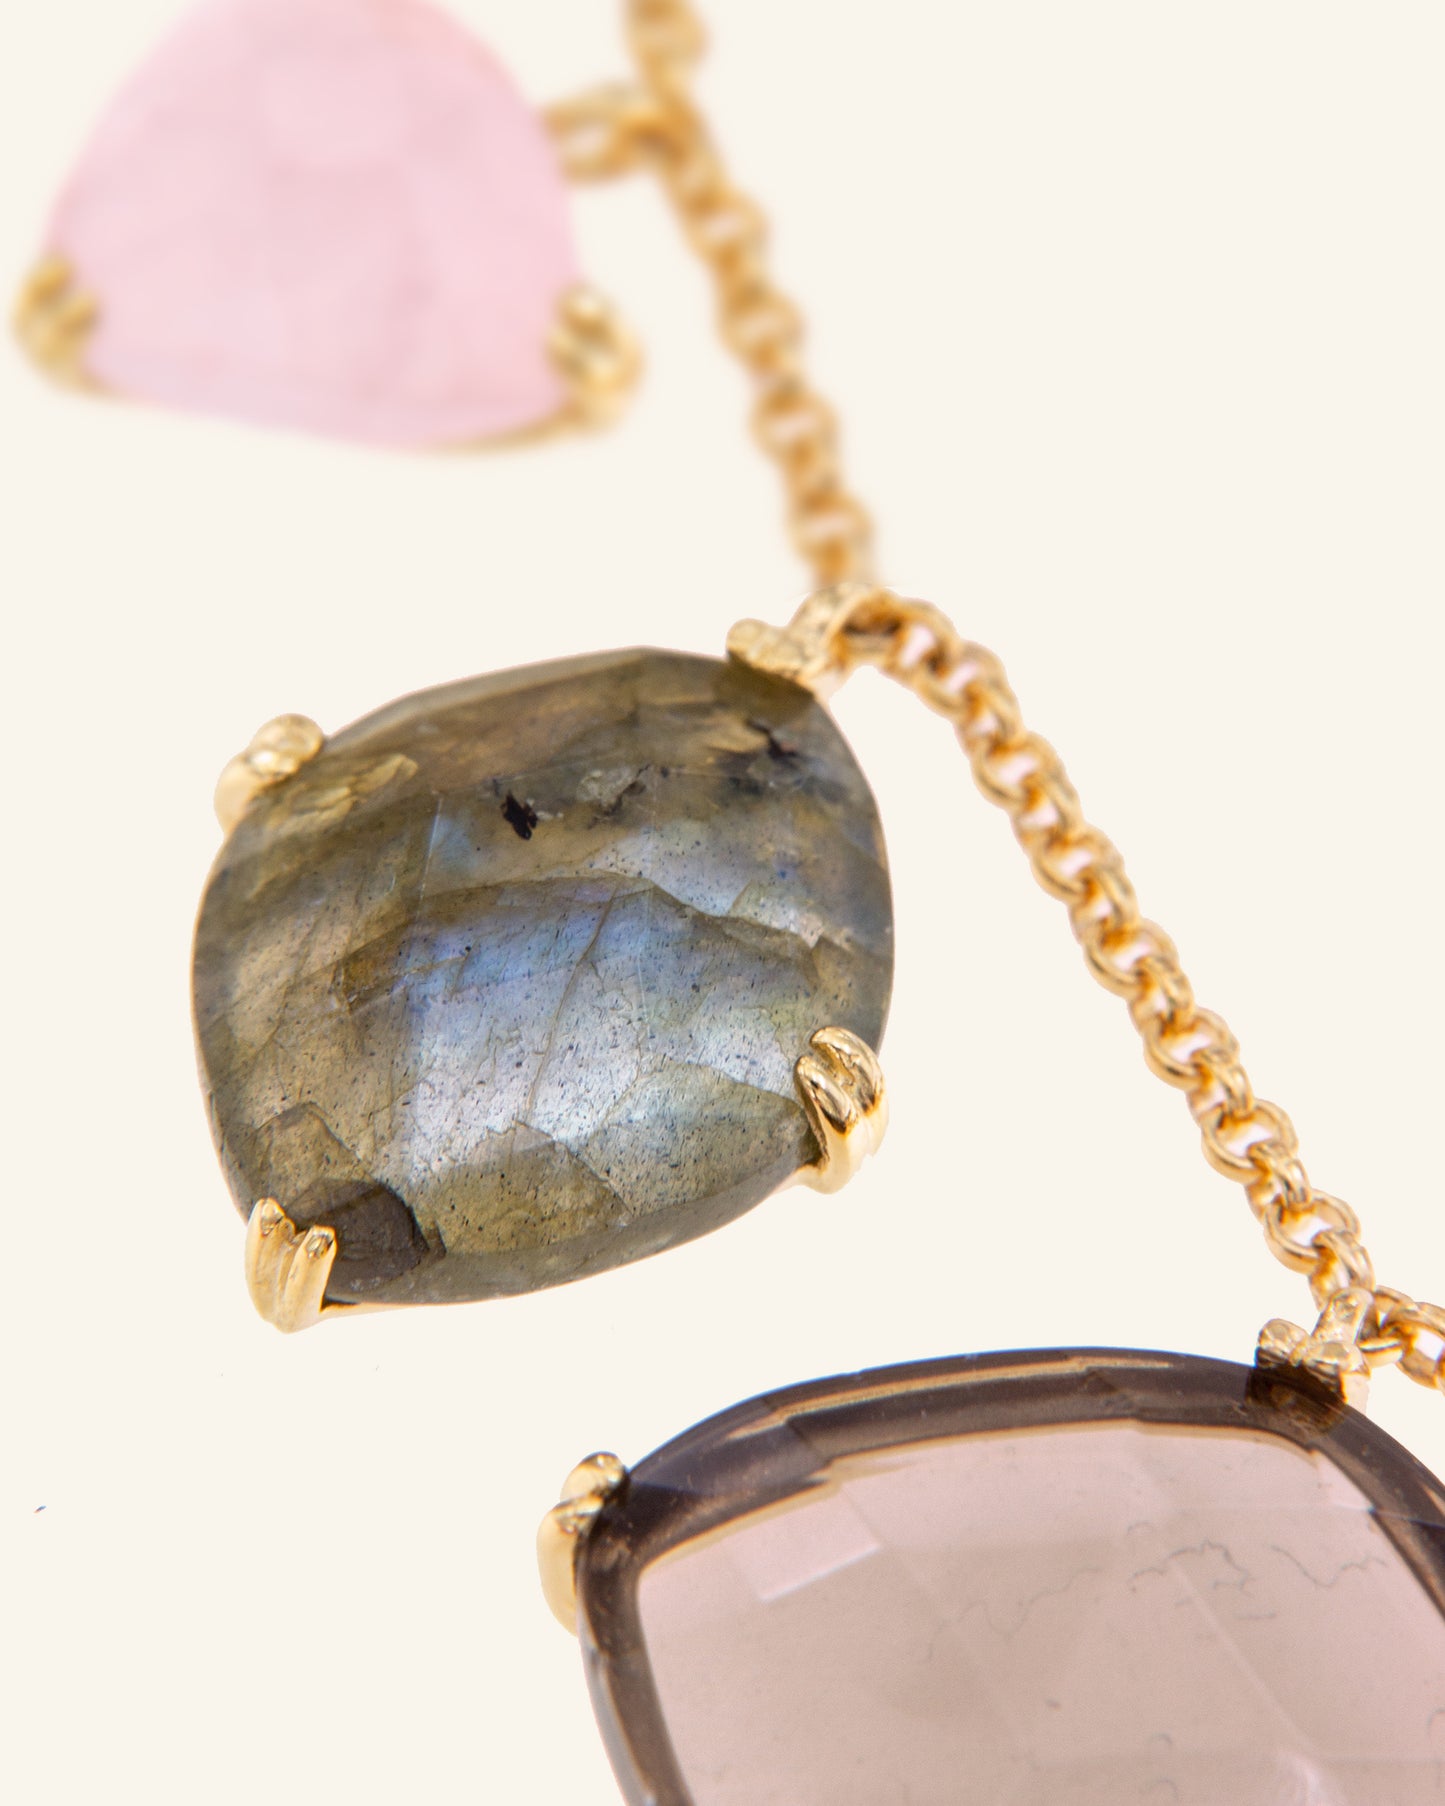 Ari necklace with amethyst, rose quartz and smoked quartz